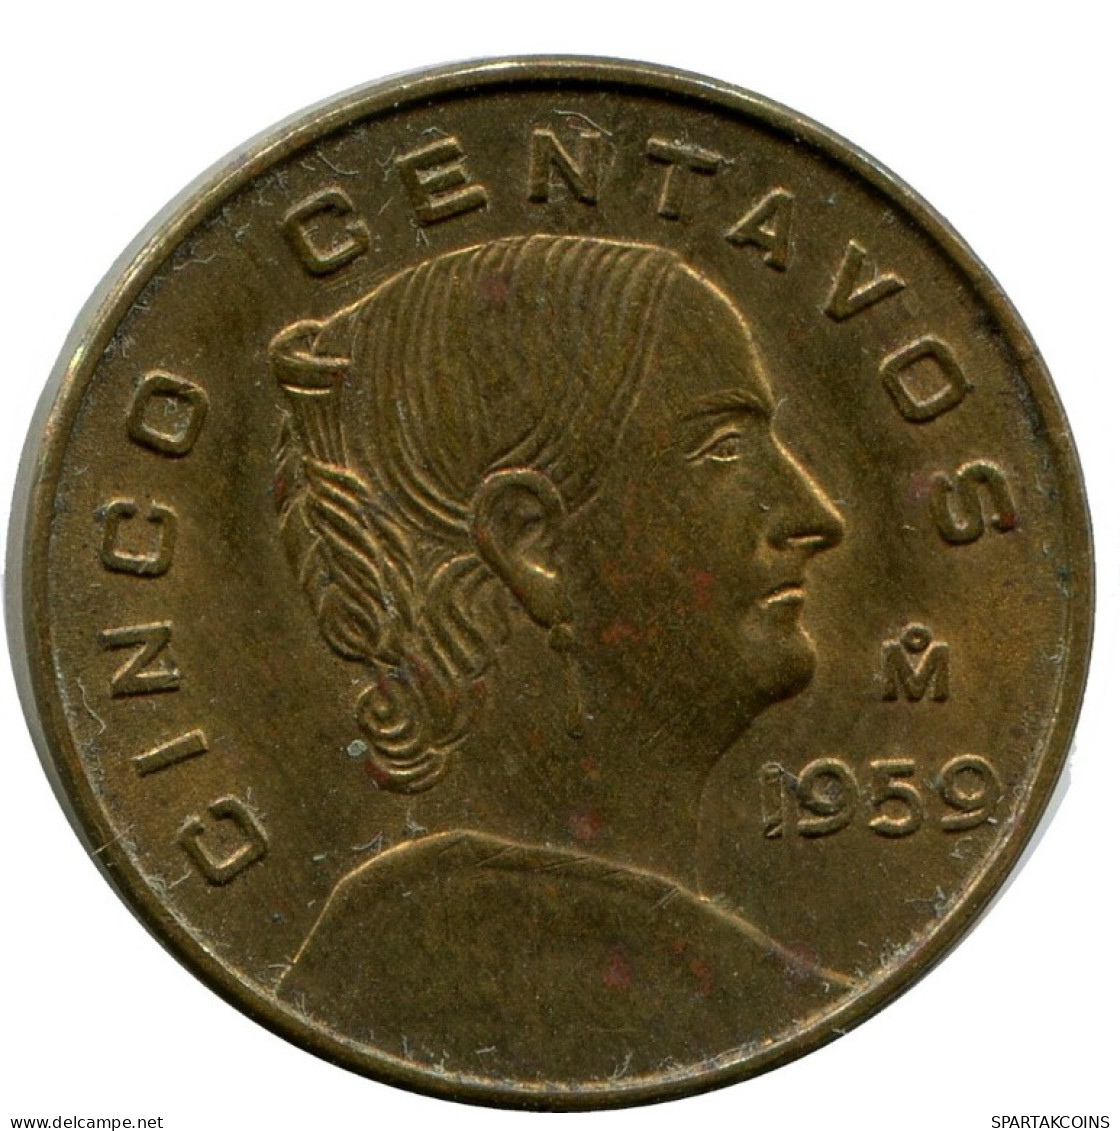 5 CENTAVOS 1959 MEXICO Coin #AH439.5.U.A - Mexiko